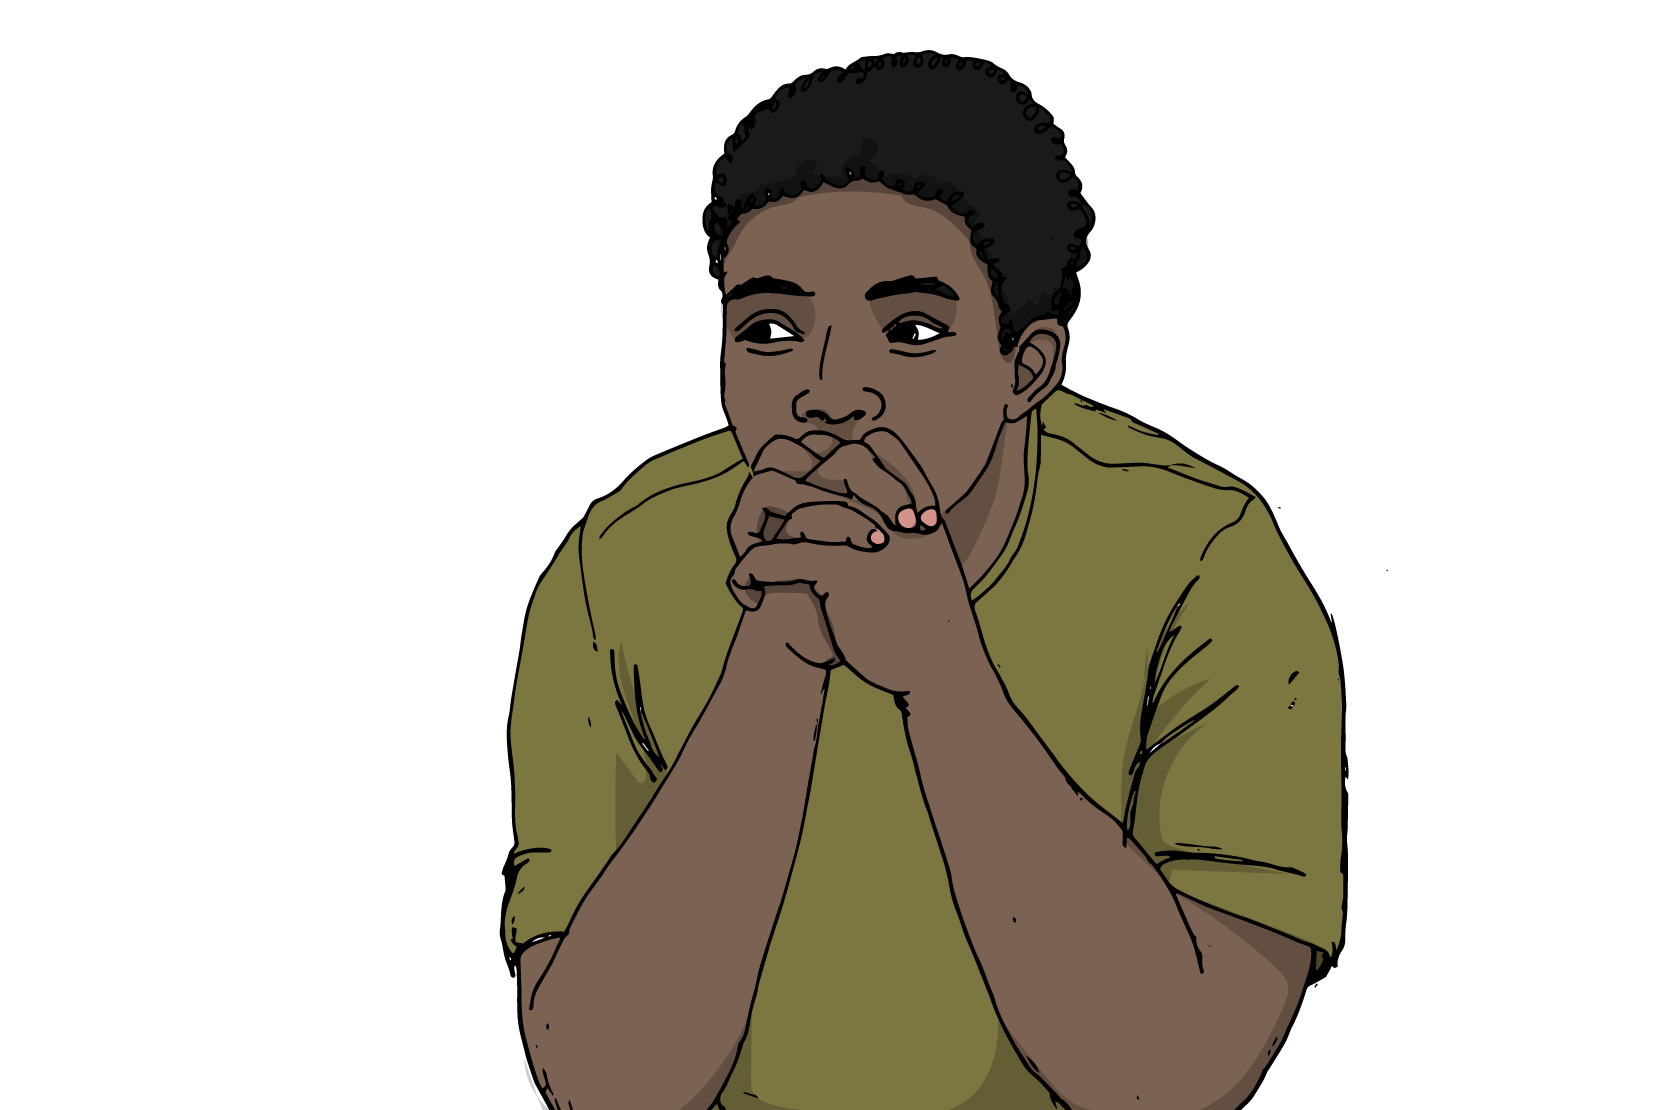 En ung person sitter och lutar sig på armbågarna och har händerna knutna.